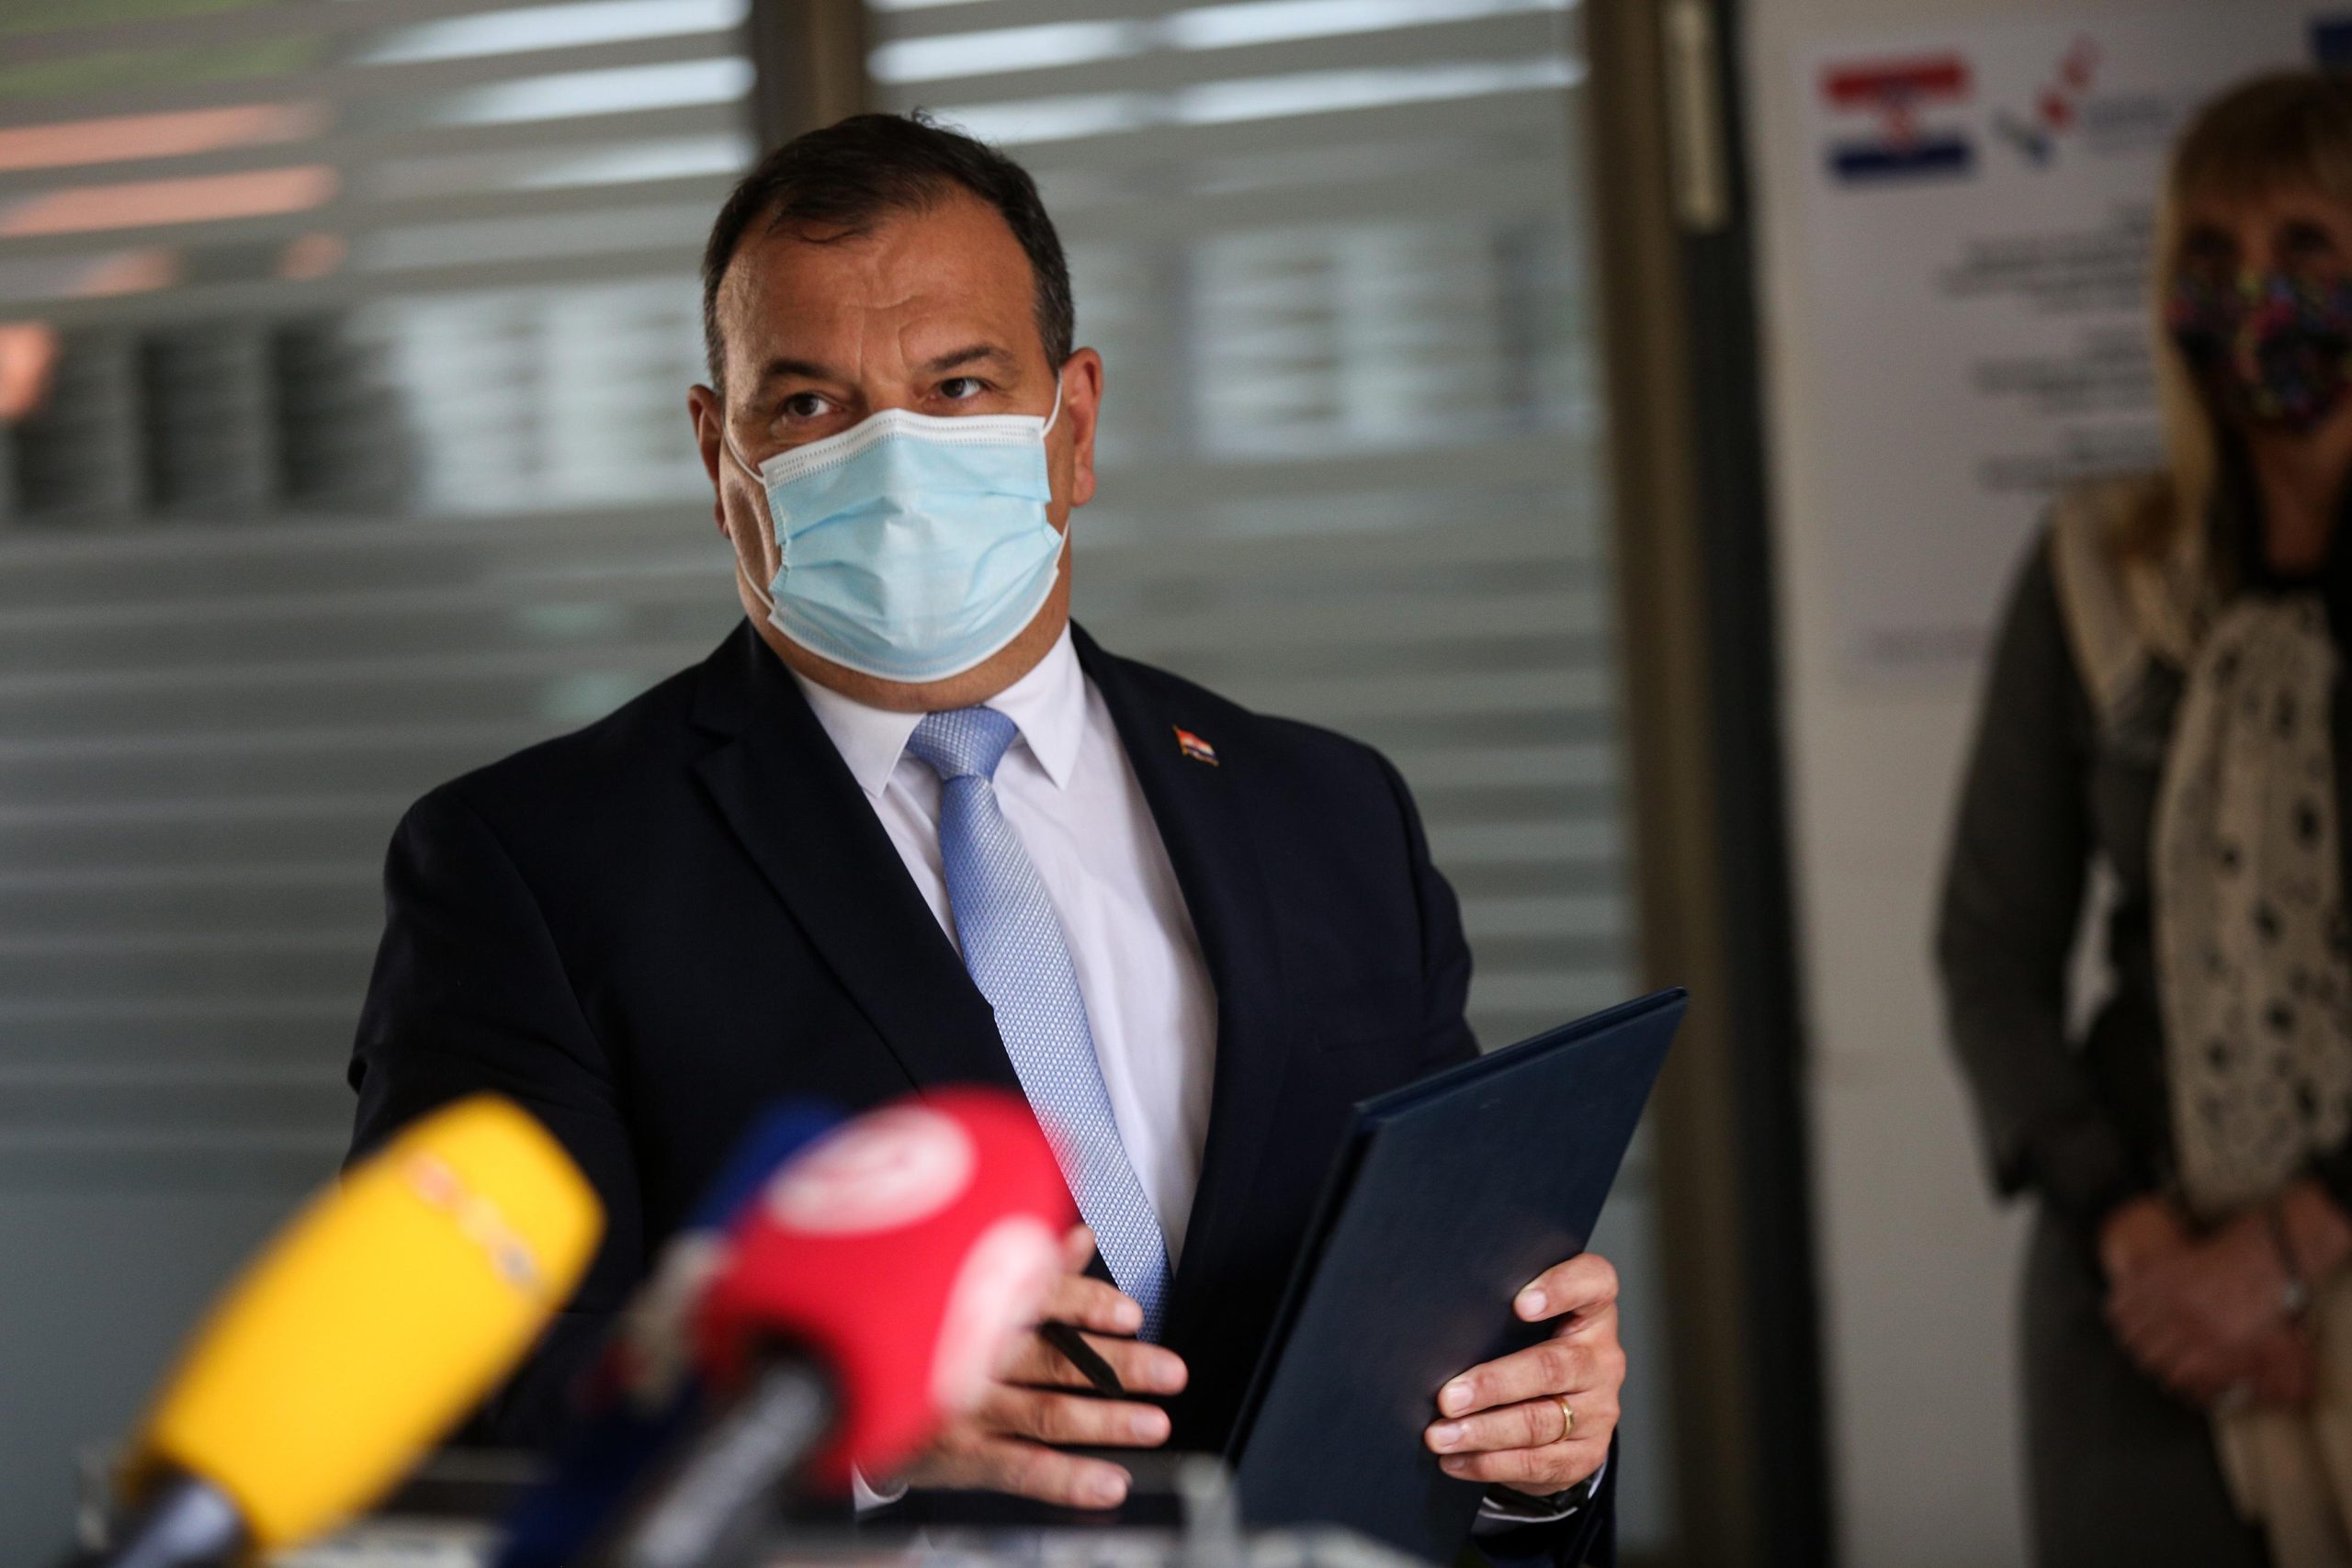 25.05.2021., Zagreb - Ministar zdravstva RH Vili Beros dao je izjavu za medije nakon potpisivanja ugovora o donaciji cjepiva Crnoj Gori i suradnje u transplatacijskom programu. Photo: Zeljko Hladika/PIXSELL